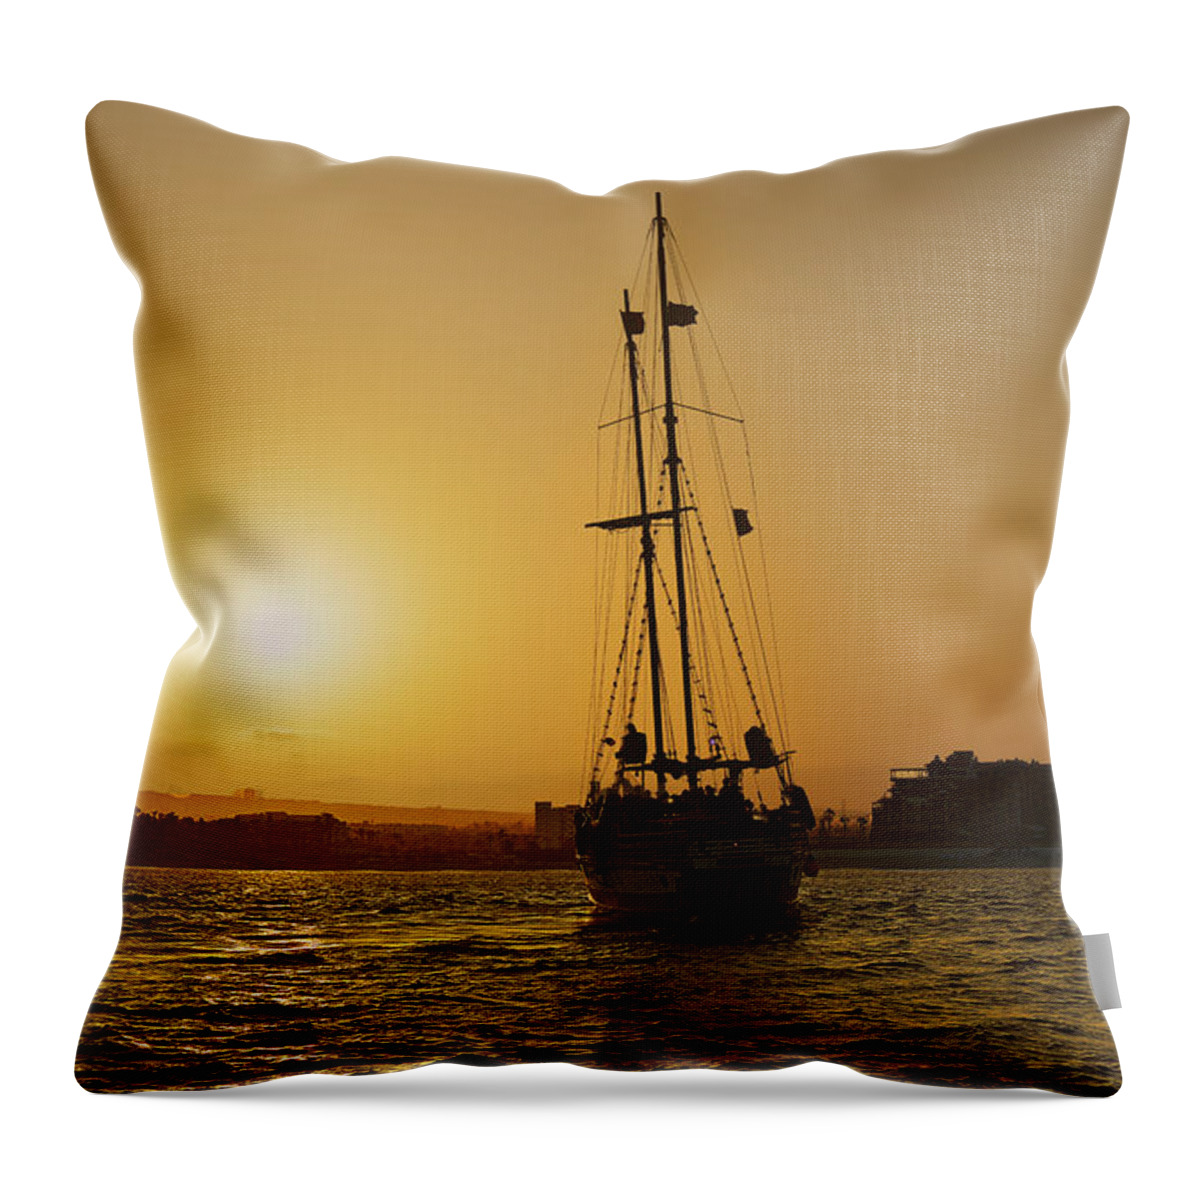 Sunset Throw Pillow featuring the photograph Golden Cabo Sunset by Alexandra Till